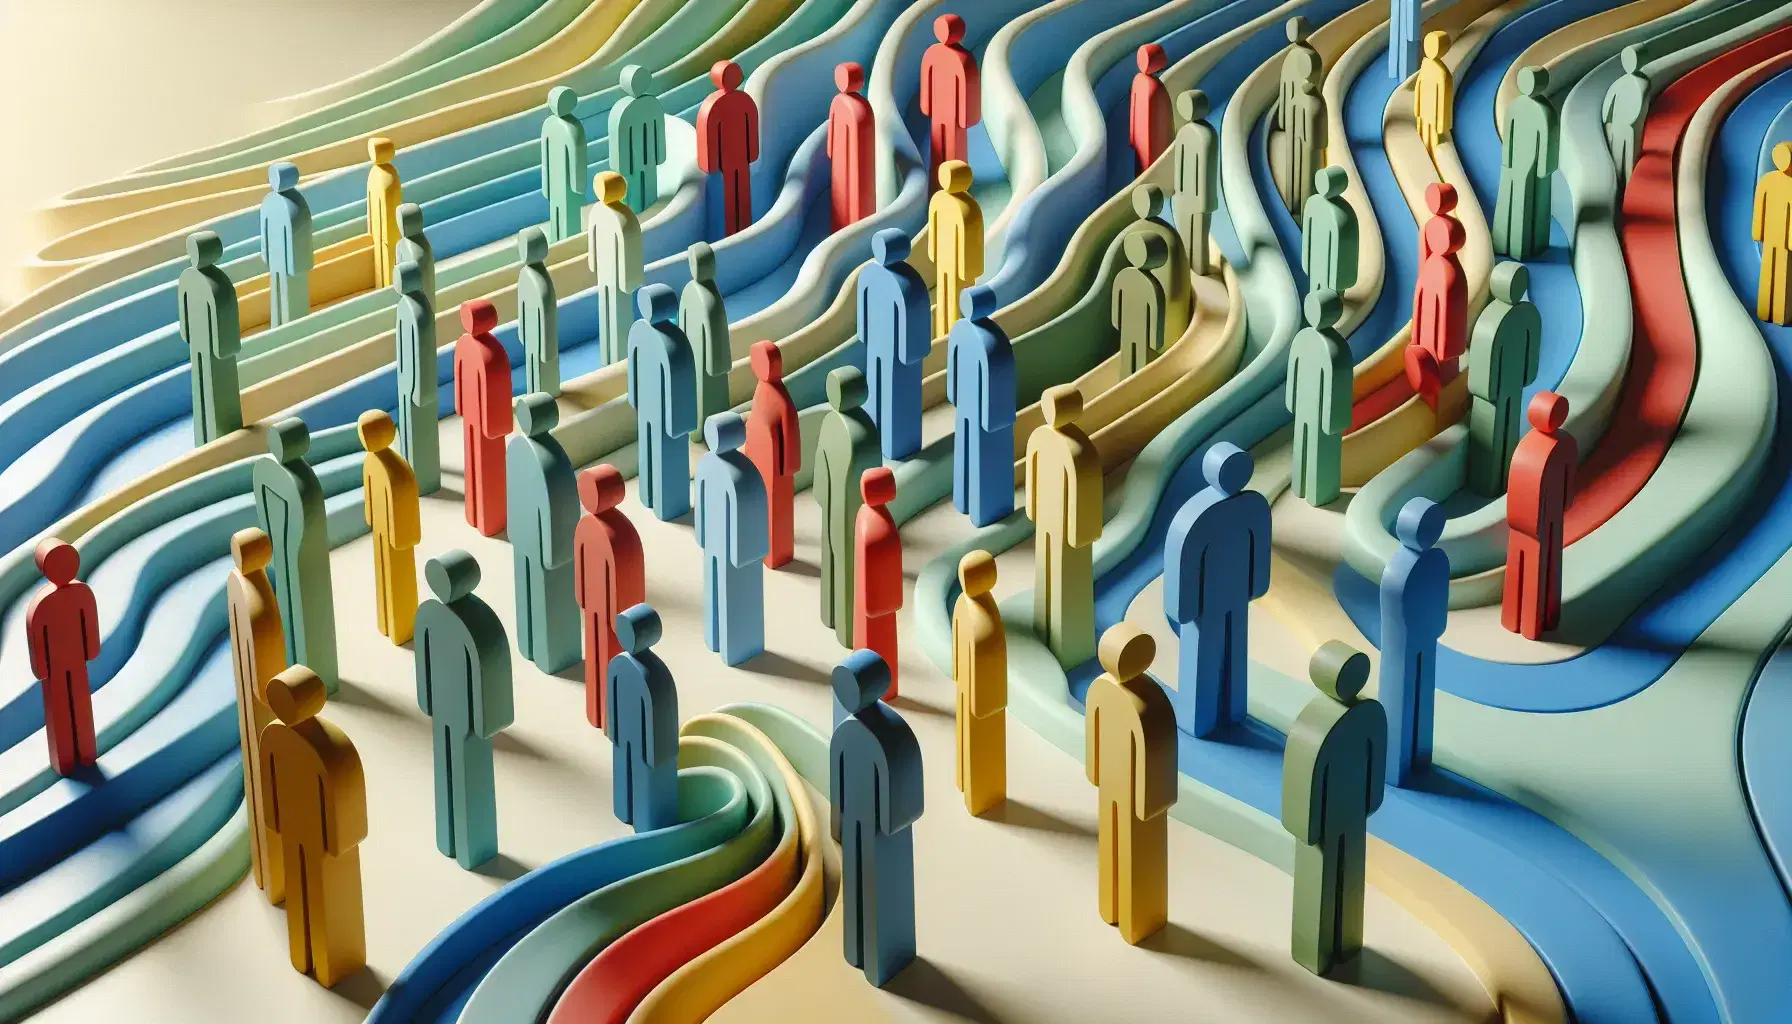 Figuras humanas abstractas y coloridas representando diversidad en fondo ondulado azul y verde, sin detalles faciales ni de vestimenta, promoviendo anonimato y unidad.